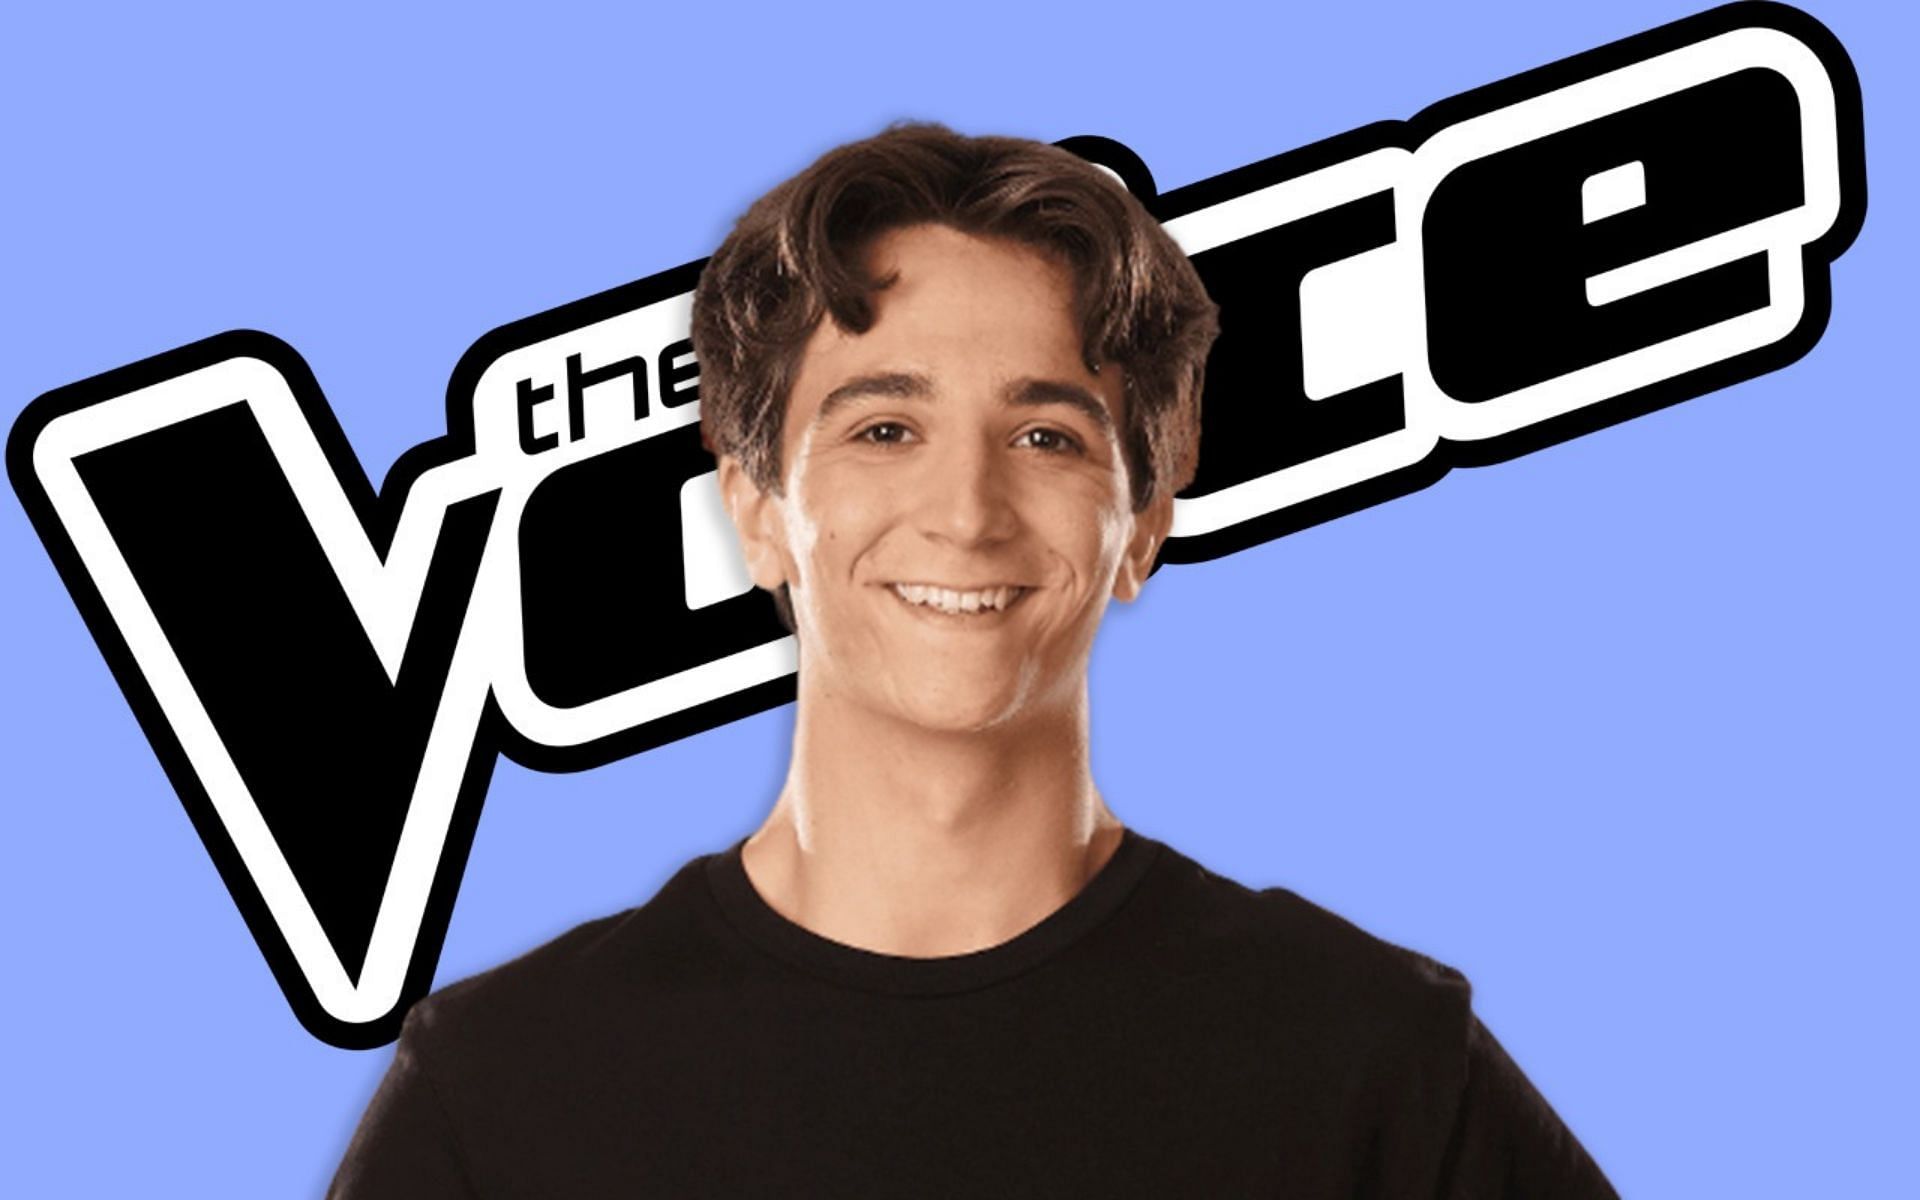 &#039;The Voice&#039; Season 21 contestant Jack Rogan (Image via Sportskeeda)